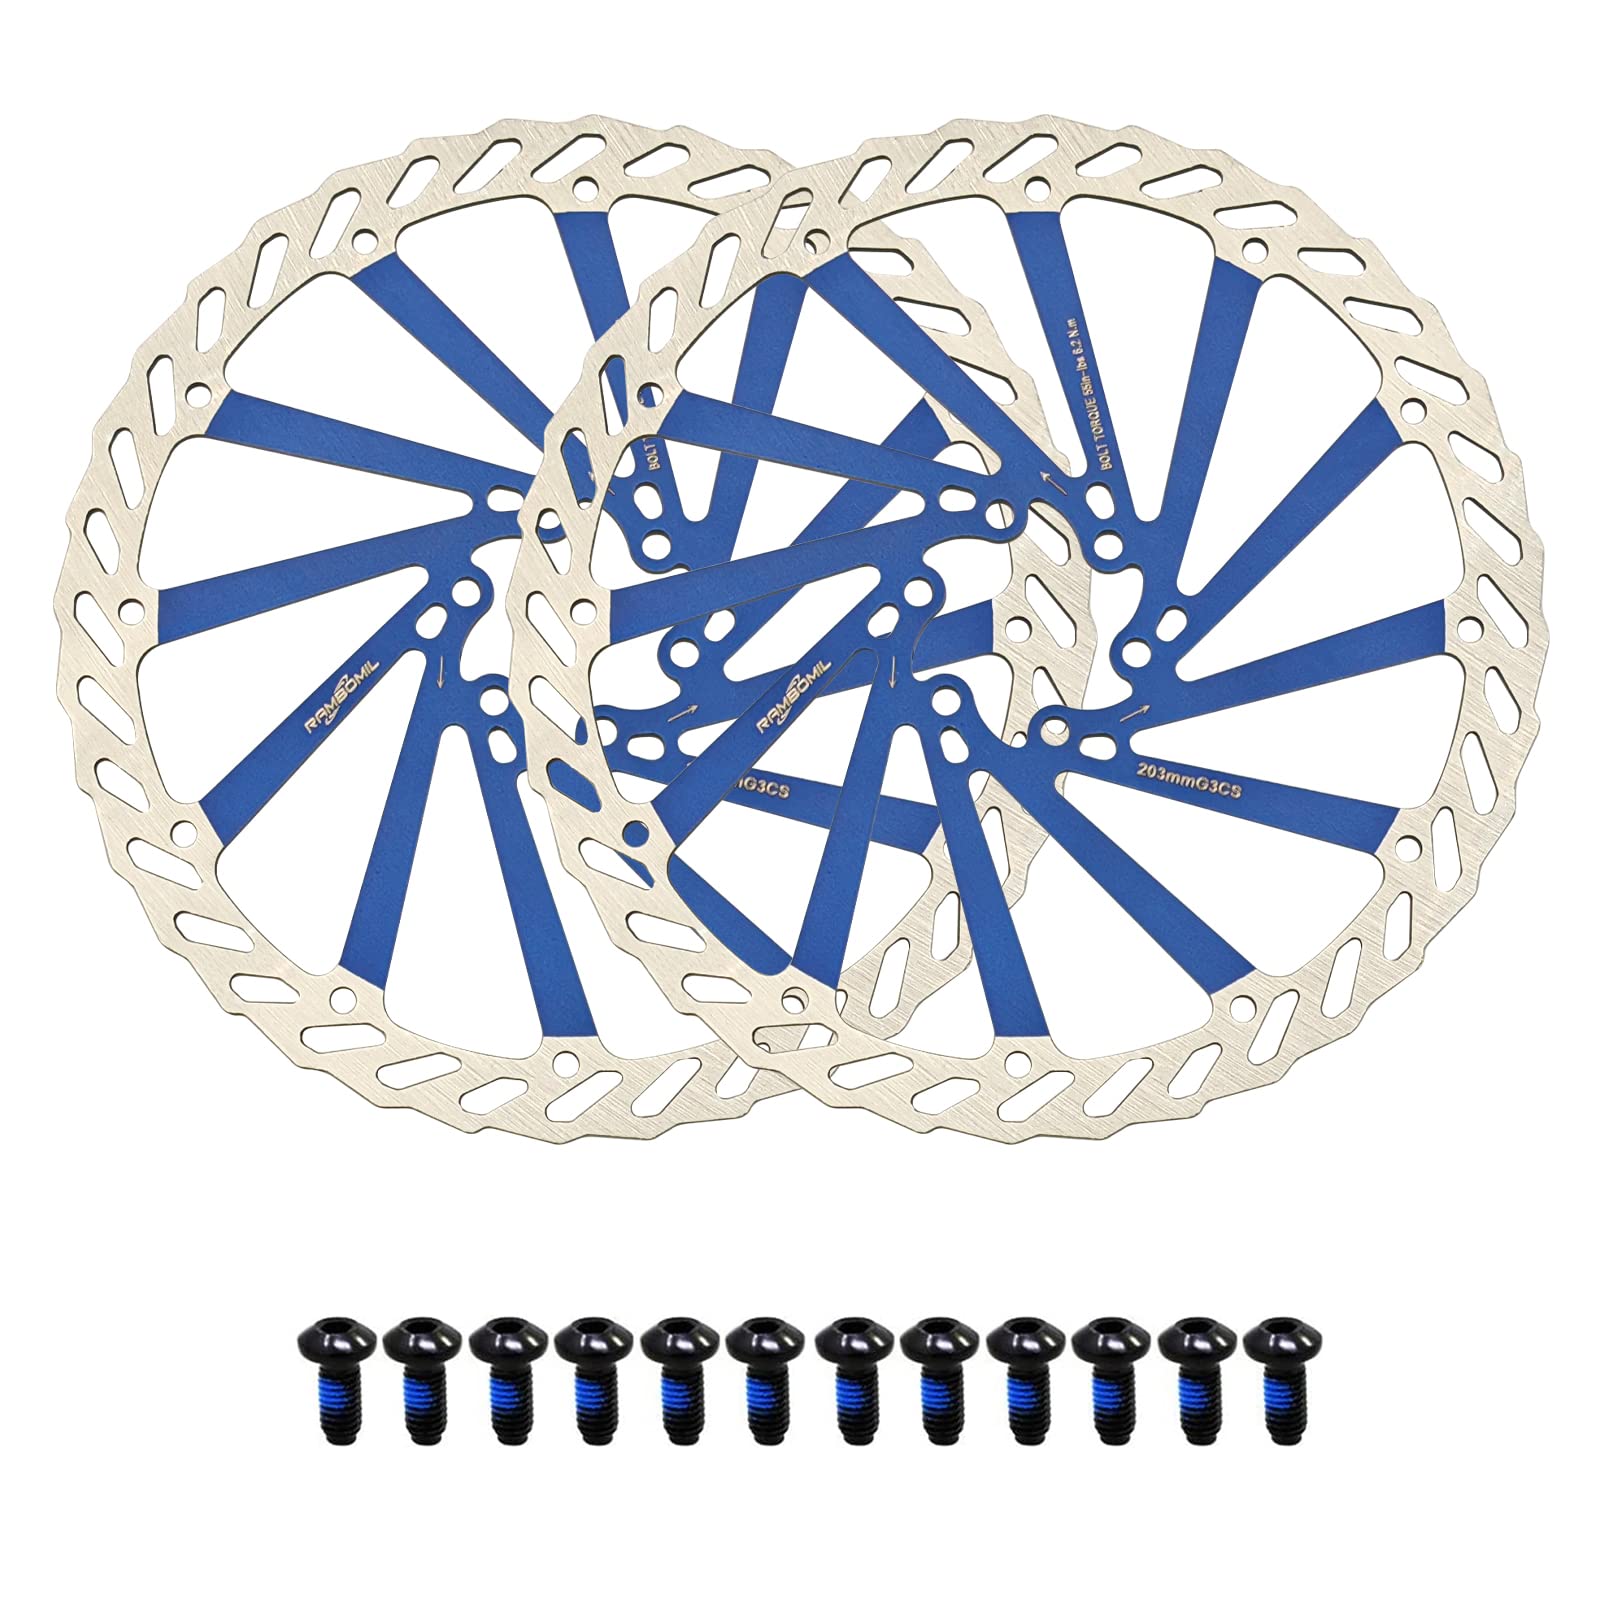 Jane Eyre 203mm Fahrrad Bremsscheibe 2 Stück Scheibenbremse Fahrrad rotor mit 12 Schrauben passend für die meisten Fahrräder, Rennräder, Mountainbikes BMX MTB(Blau 203mm) von Jane Eyre